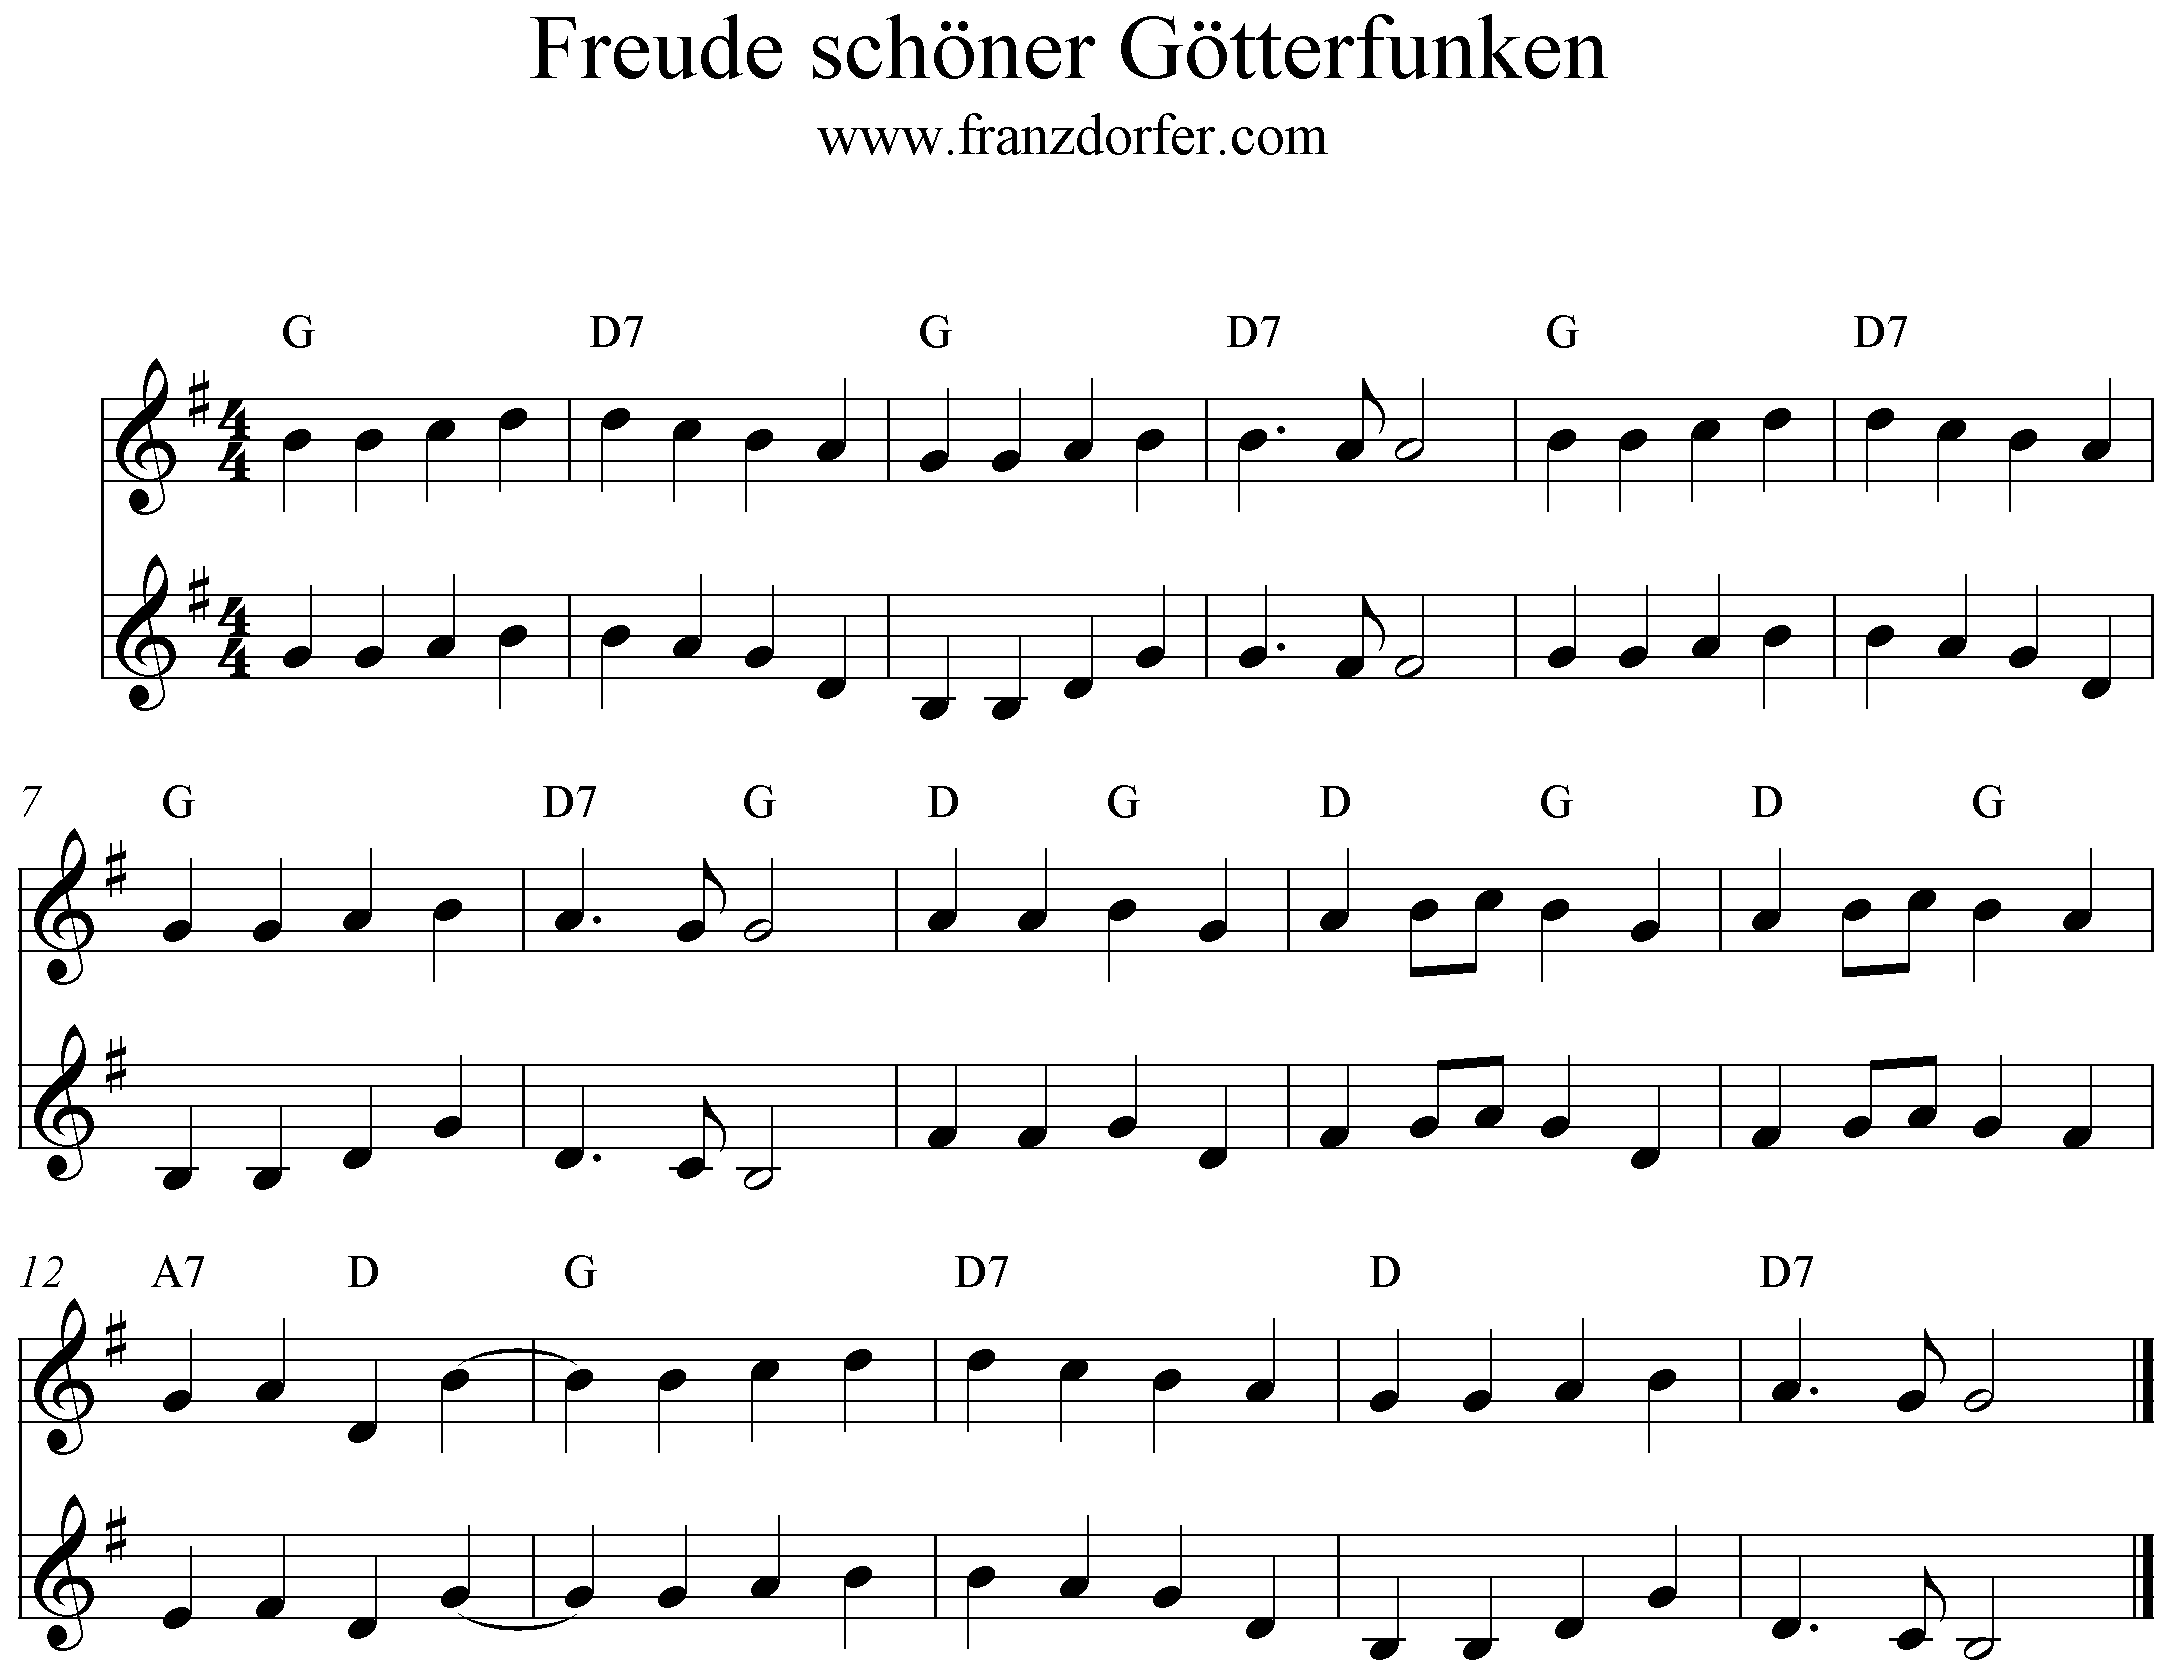 Noten Freude schöner Götterfunken - Europahymne